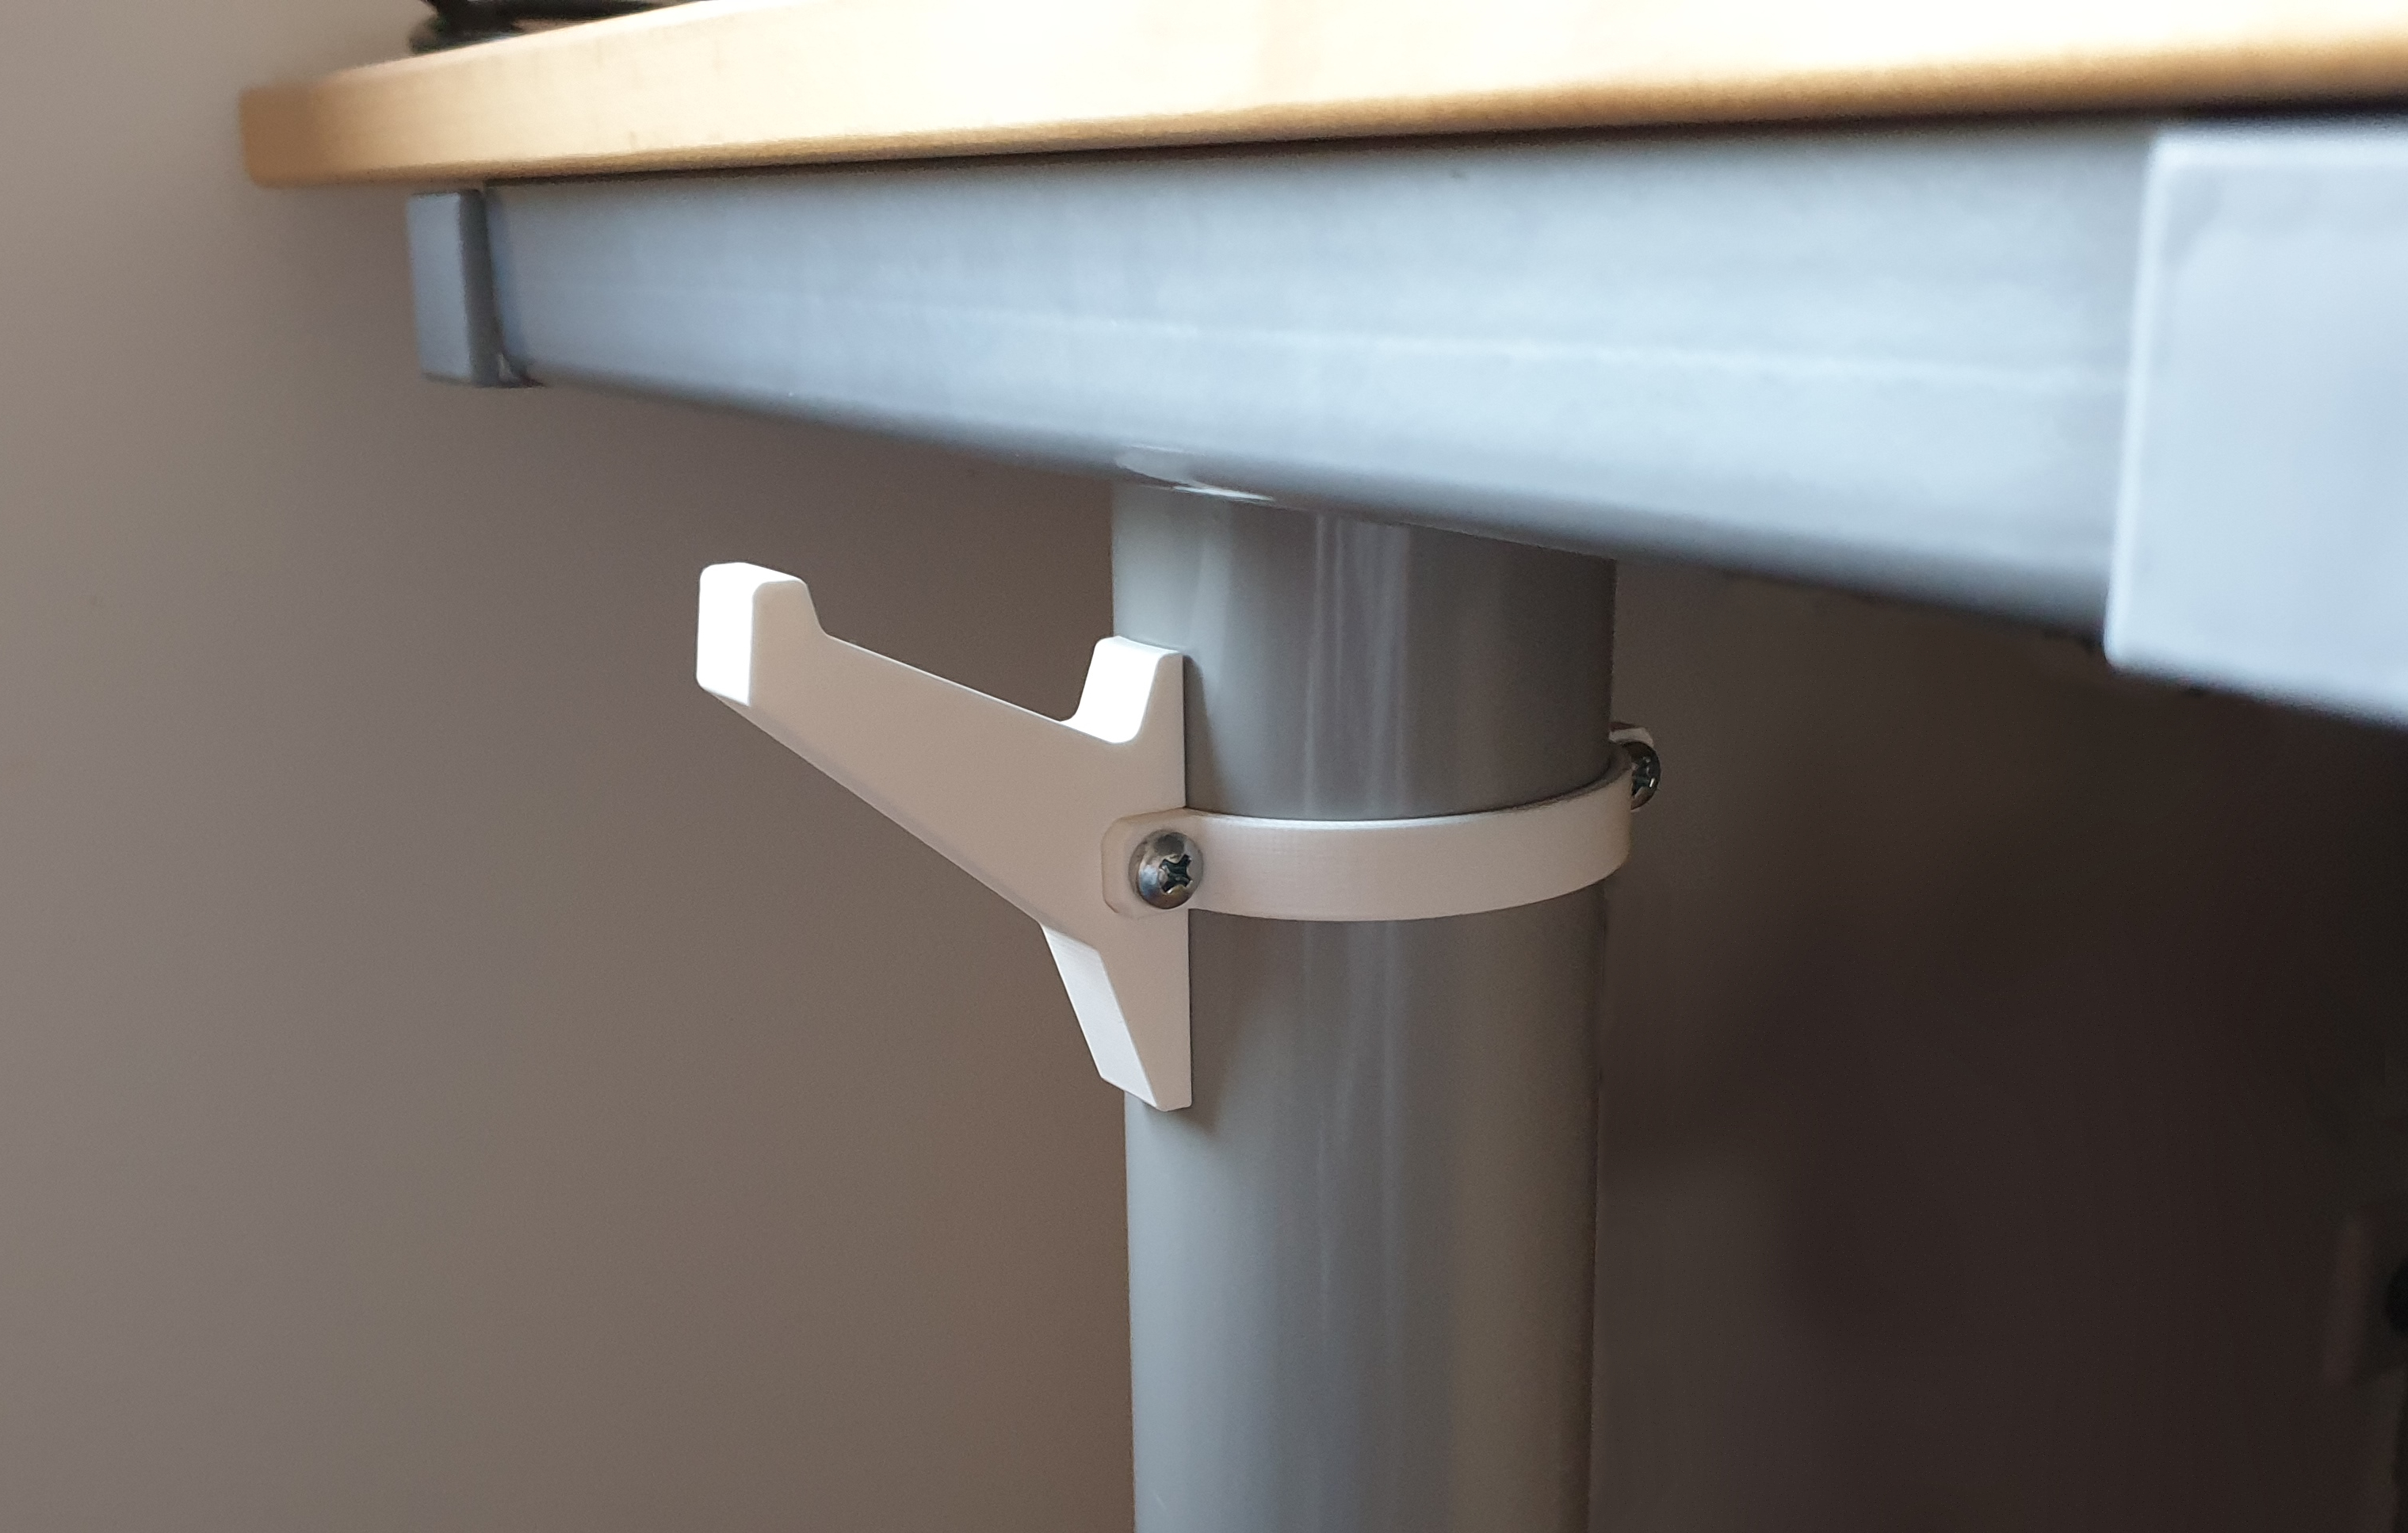 Desk Hook for IKEA T-shaped legs